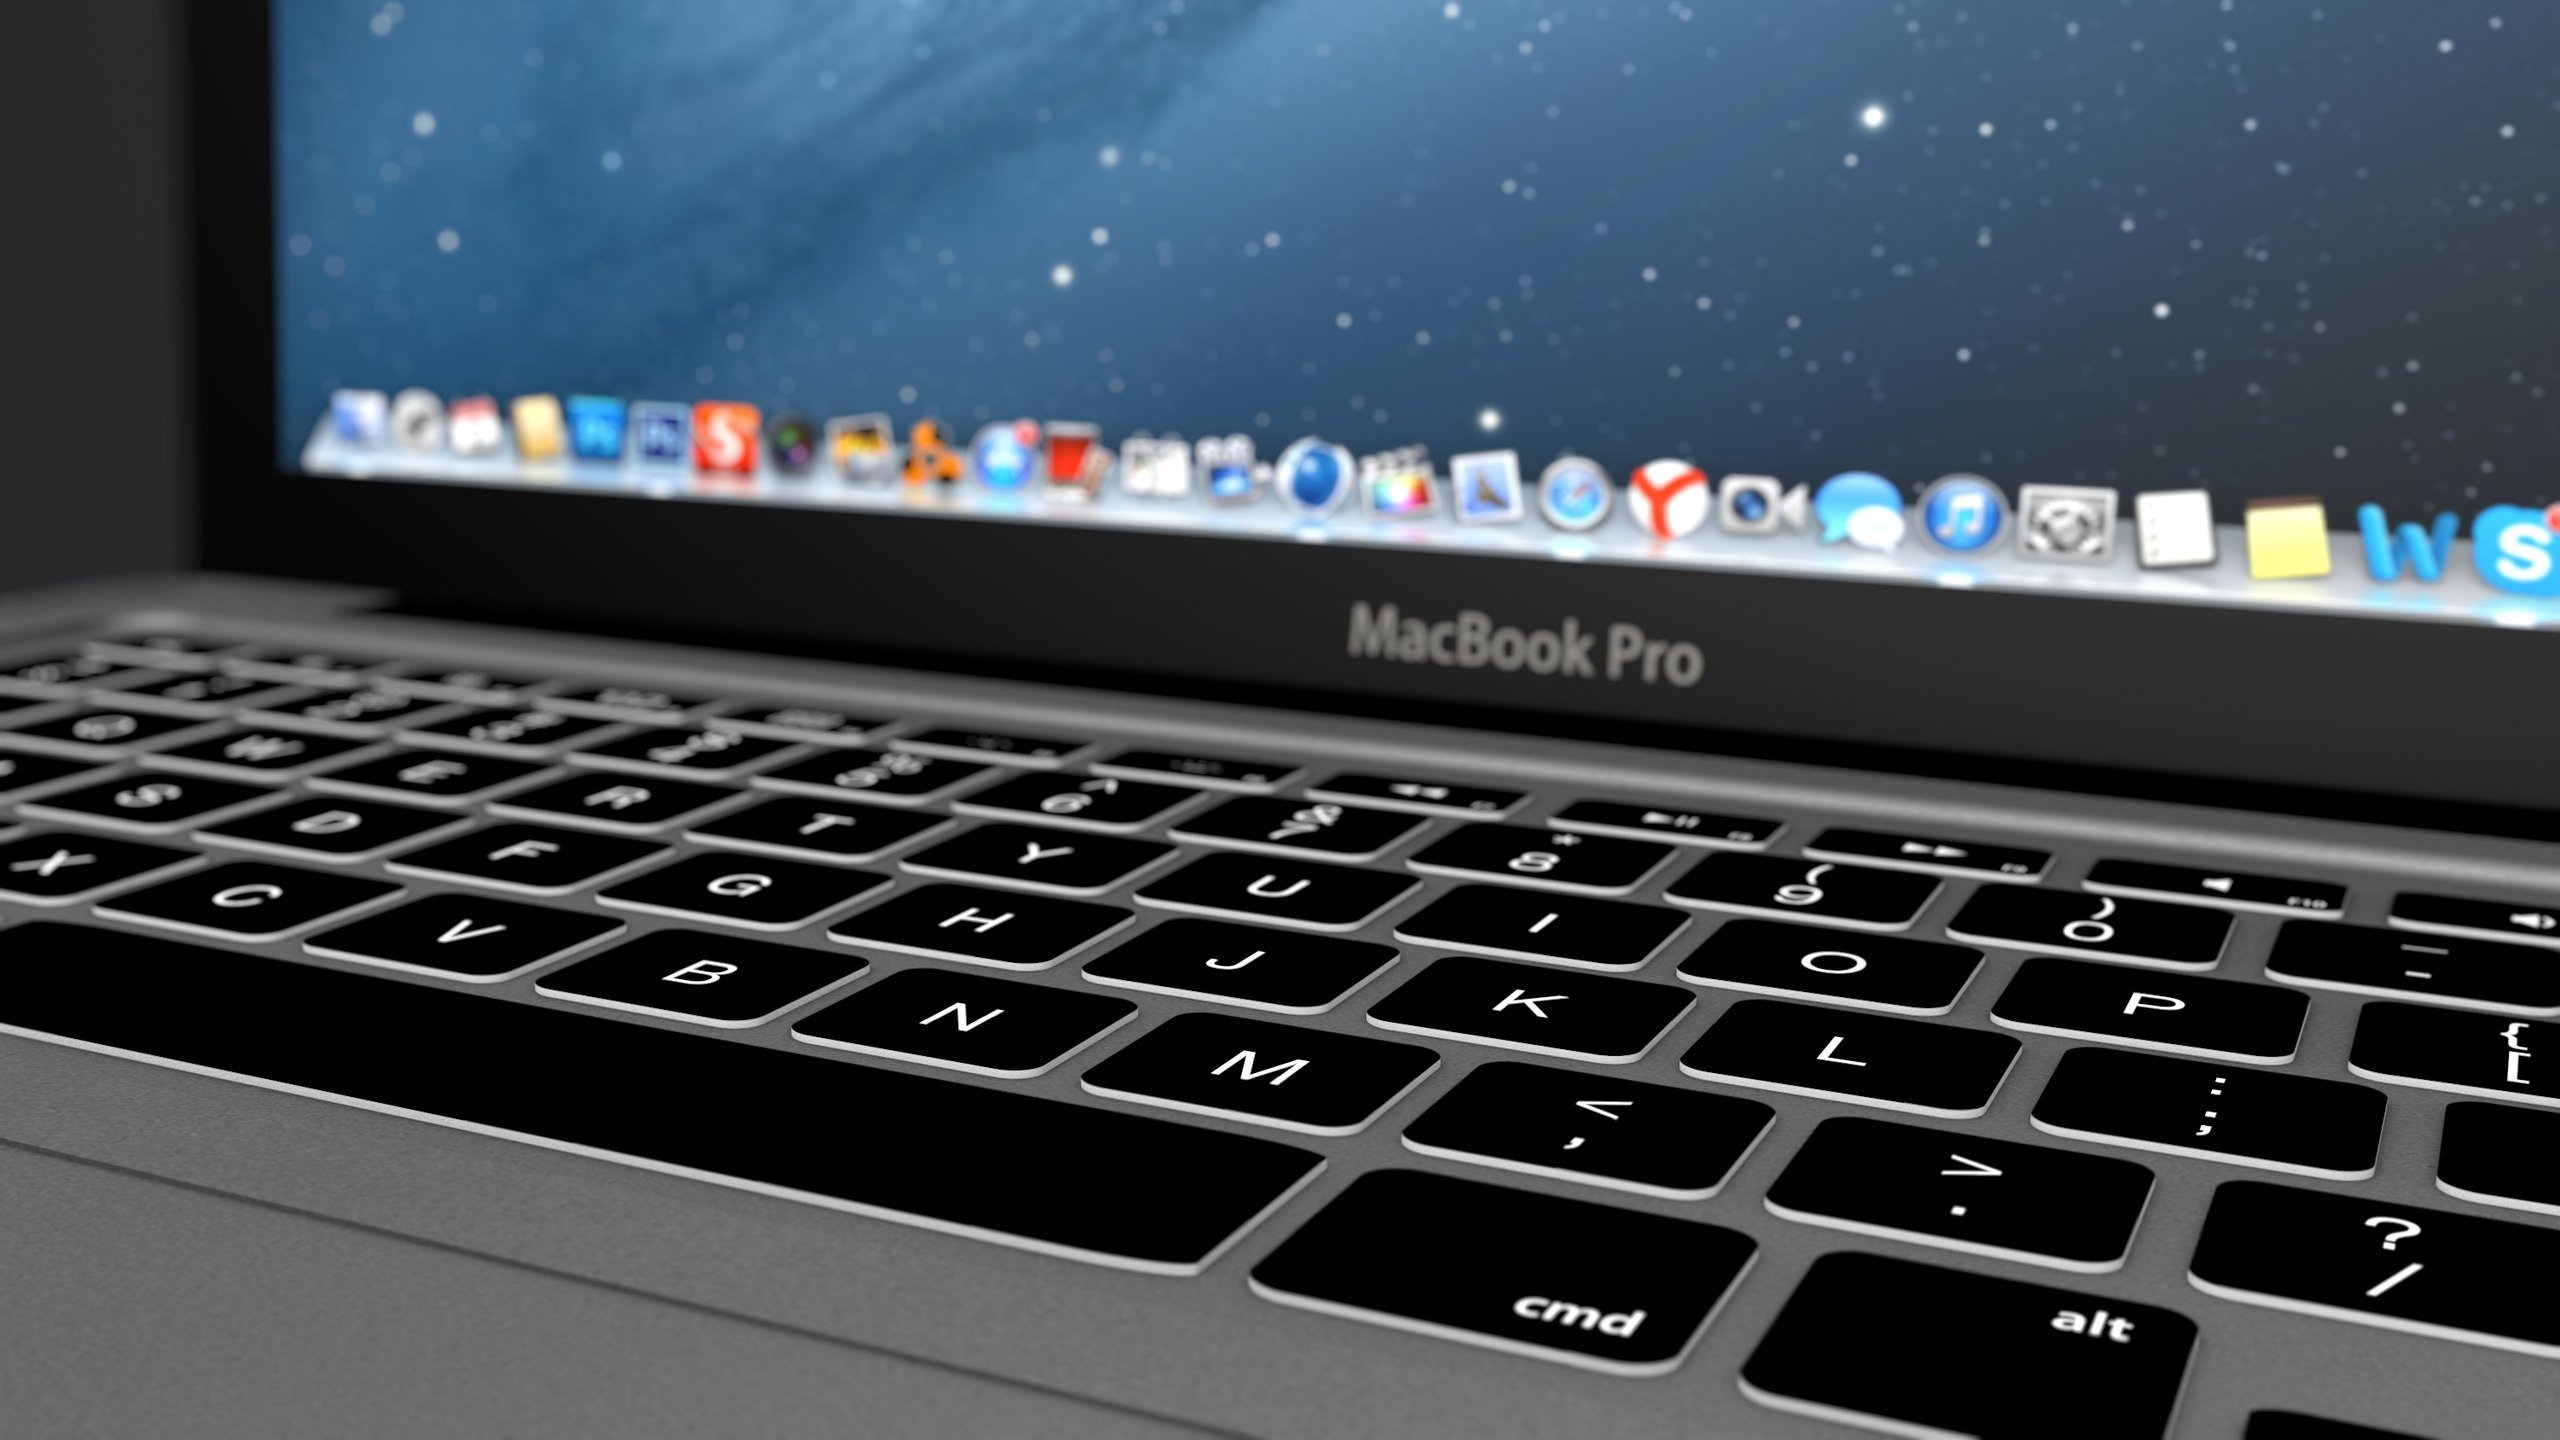 macbook pro fondo de pantalla,ordenador portátil,netbook,tecnología,computadora personal,teclado